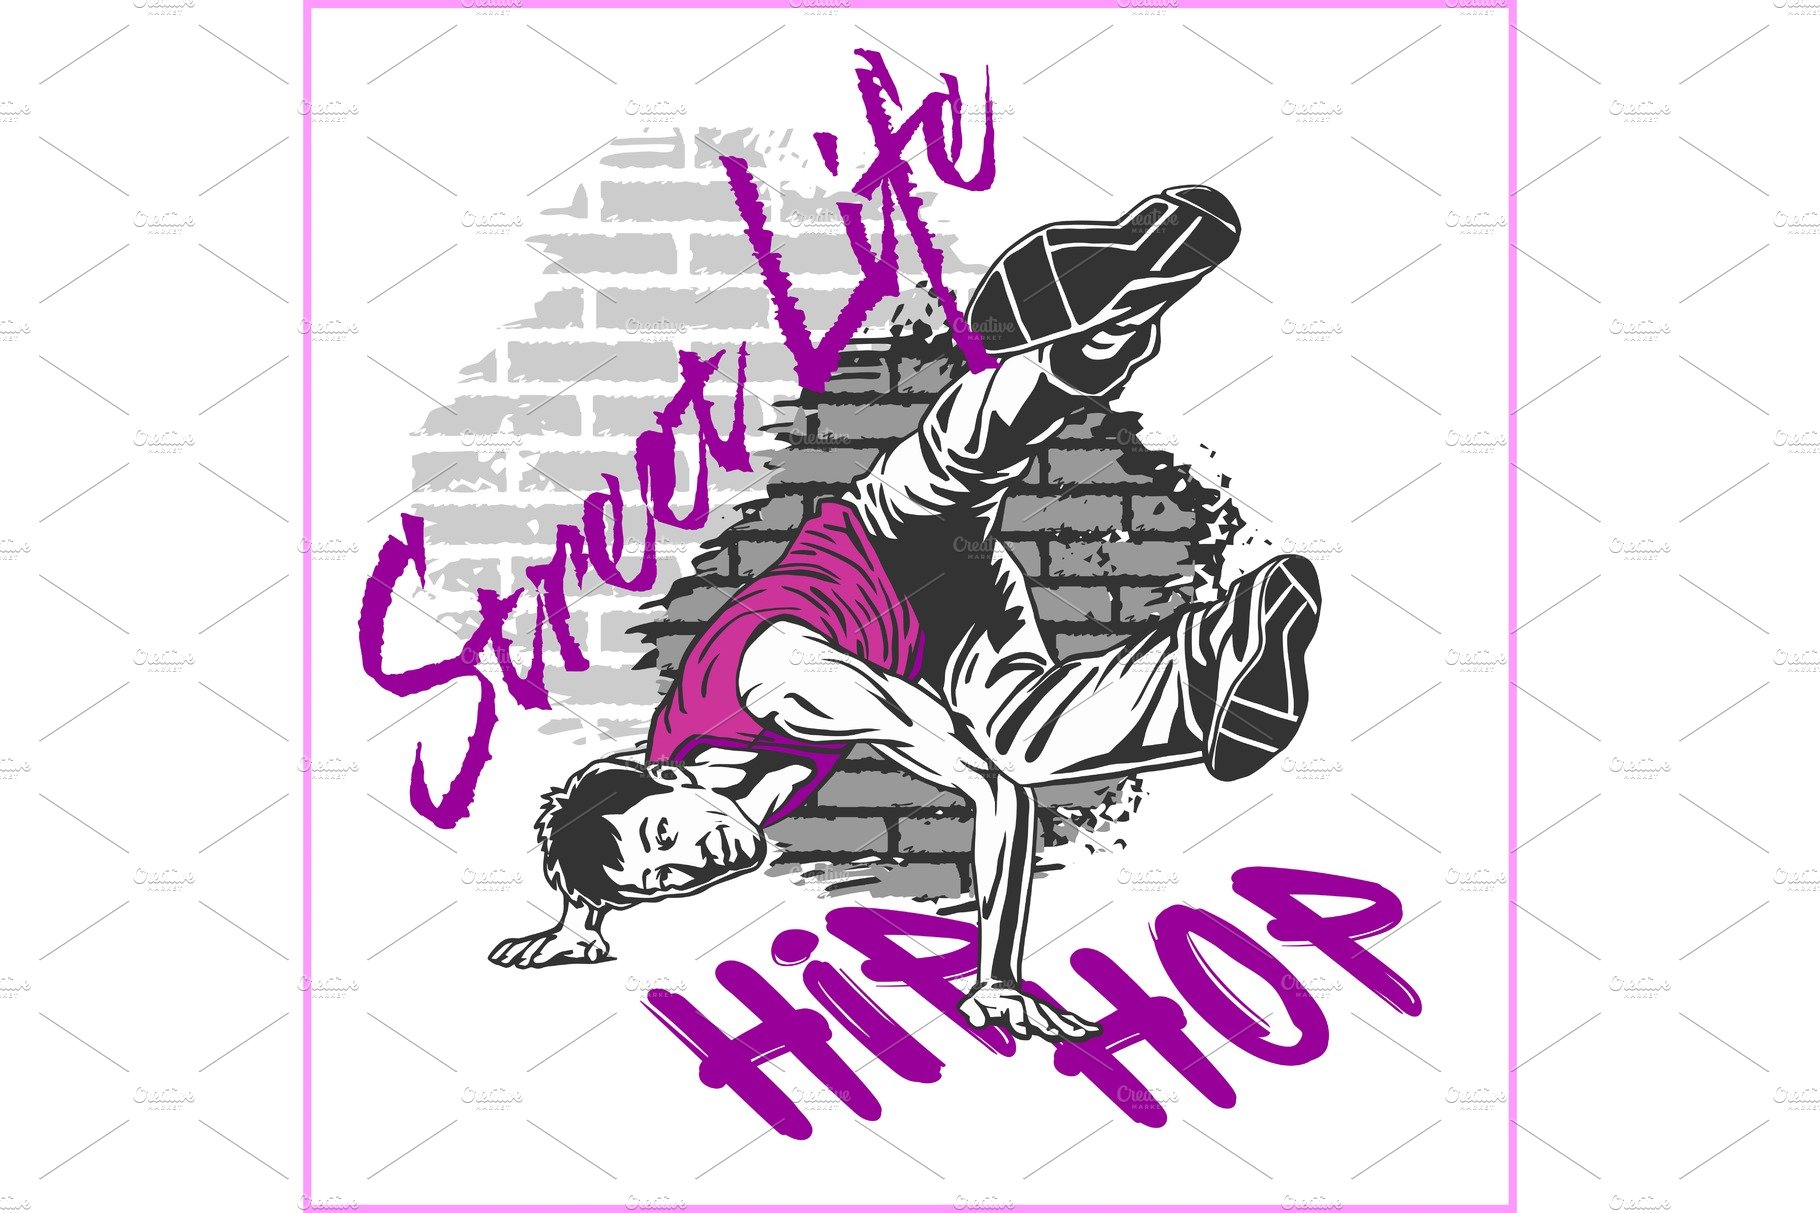 Hip hop dancer on grunge background cover image.